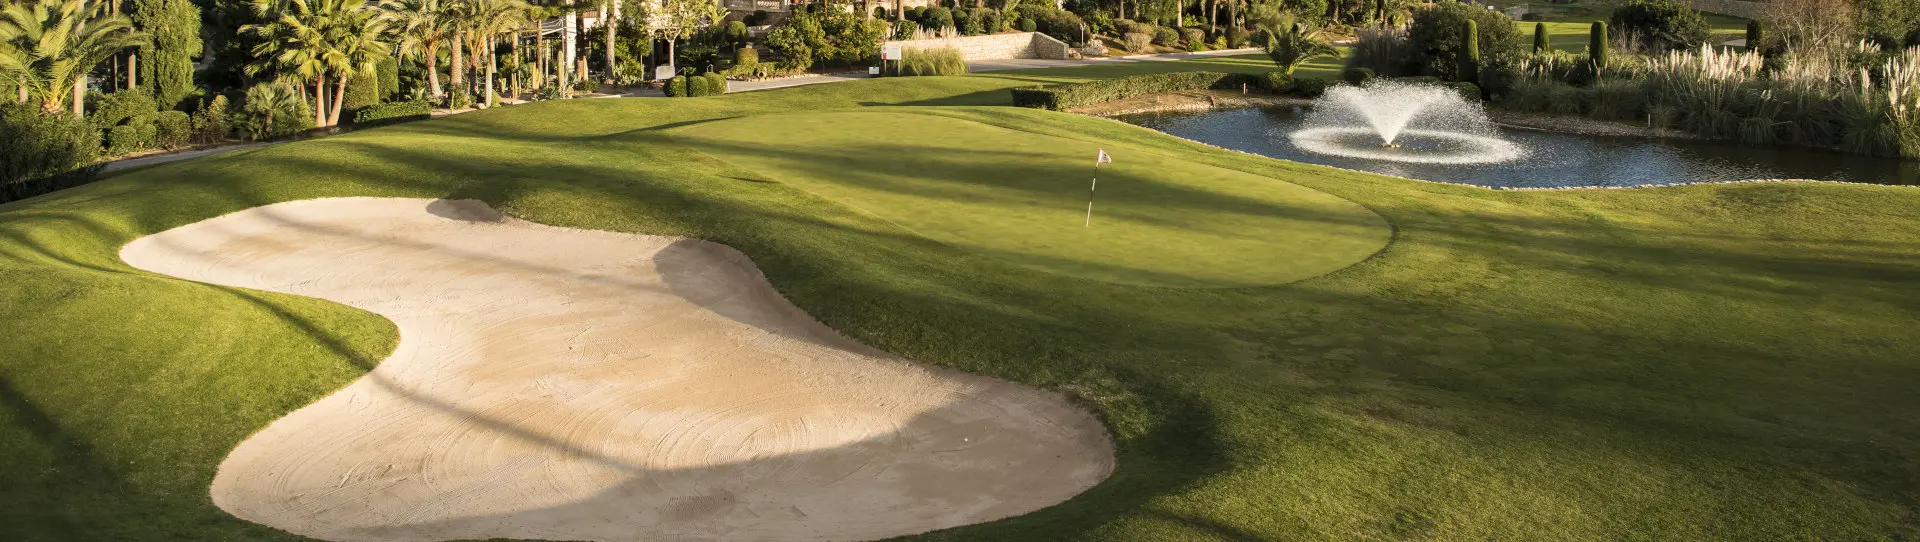 Spain golf courses - Arabella Son Vida Golf Course - Photo 1